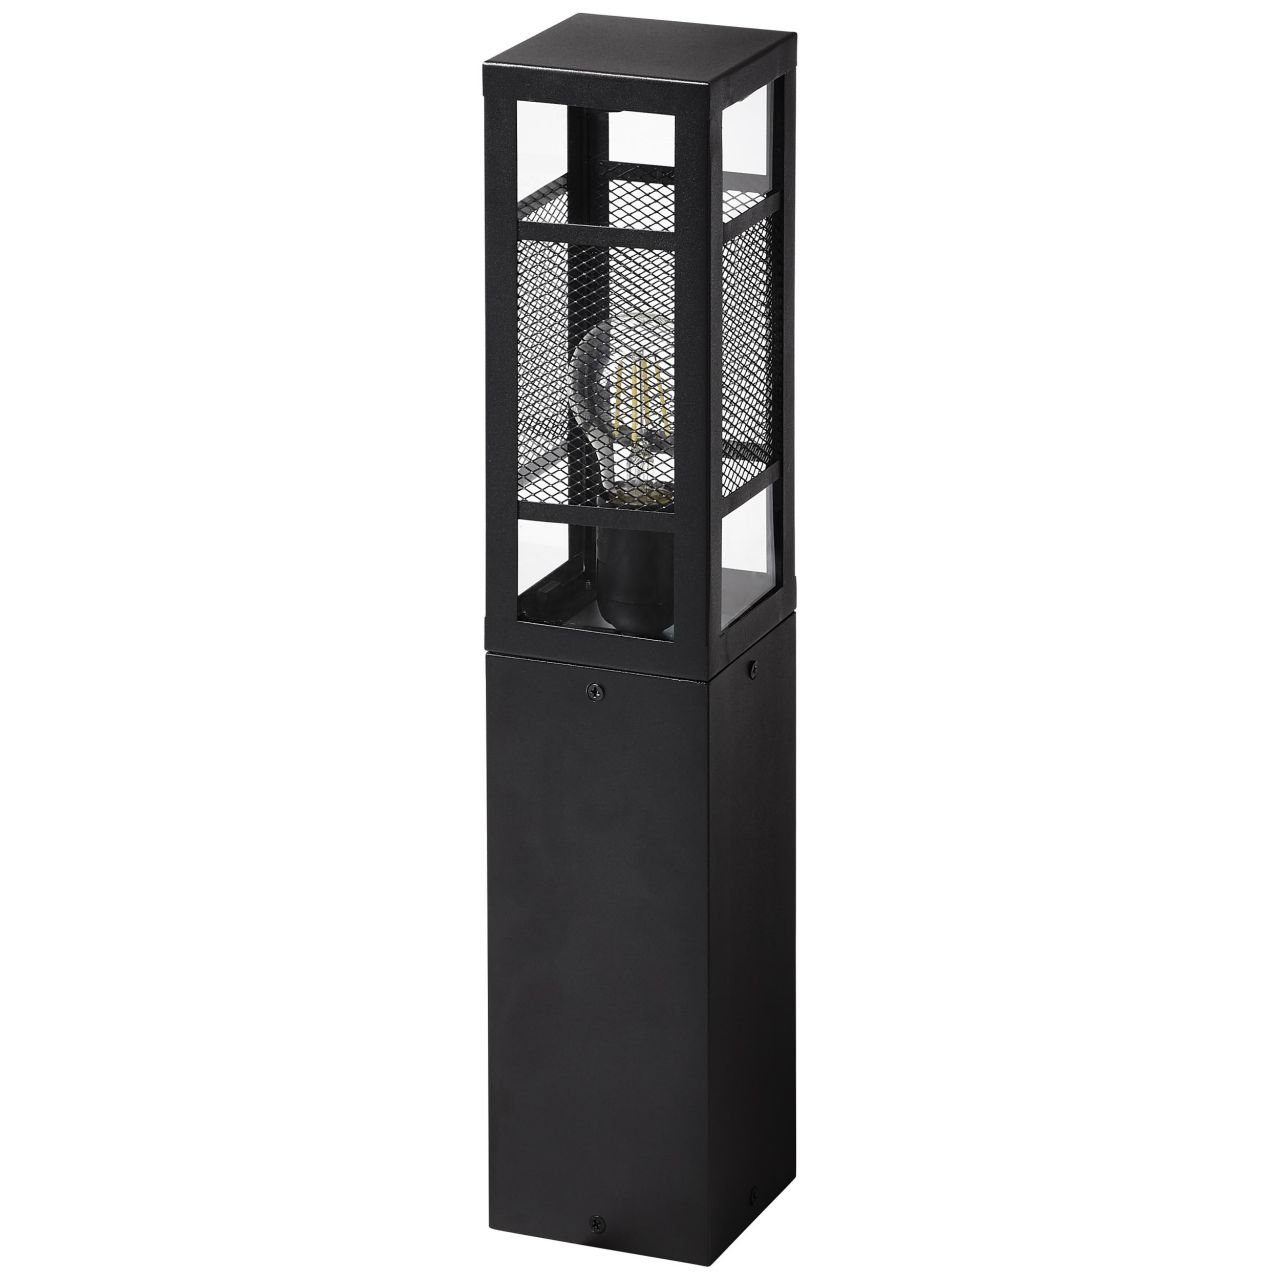 Getta Lampe, Außen-Stehlampe Brilliant A6 50cm Getta, Außensockelleuchte 1x Metall/Kunststoff, schwarz,